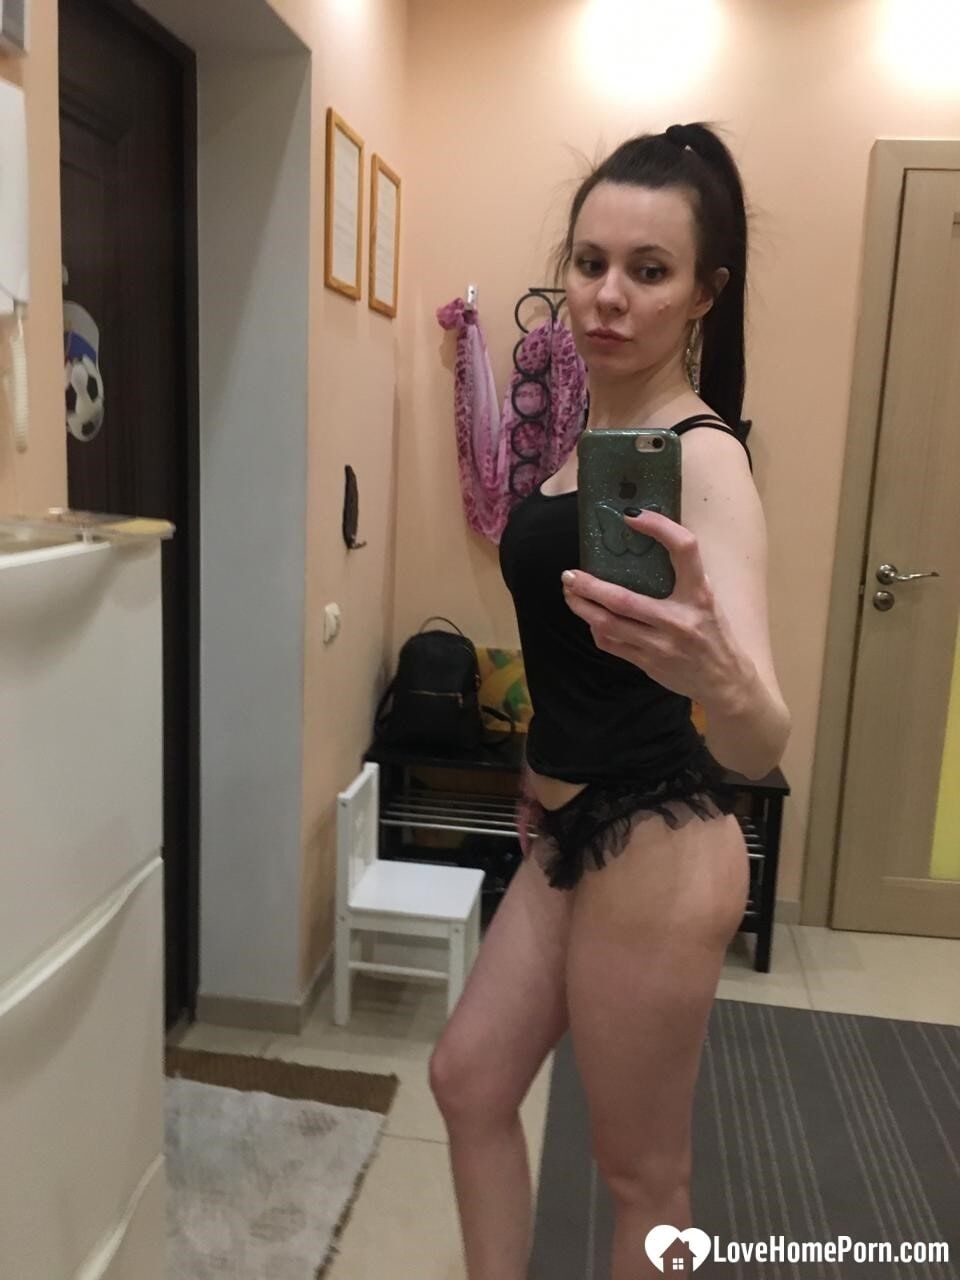 Sexy mirror selfies in my favorite lingerie #2